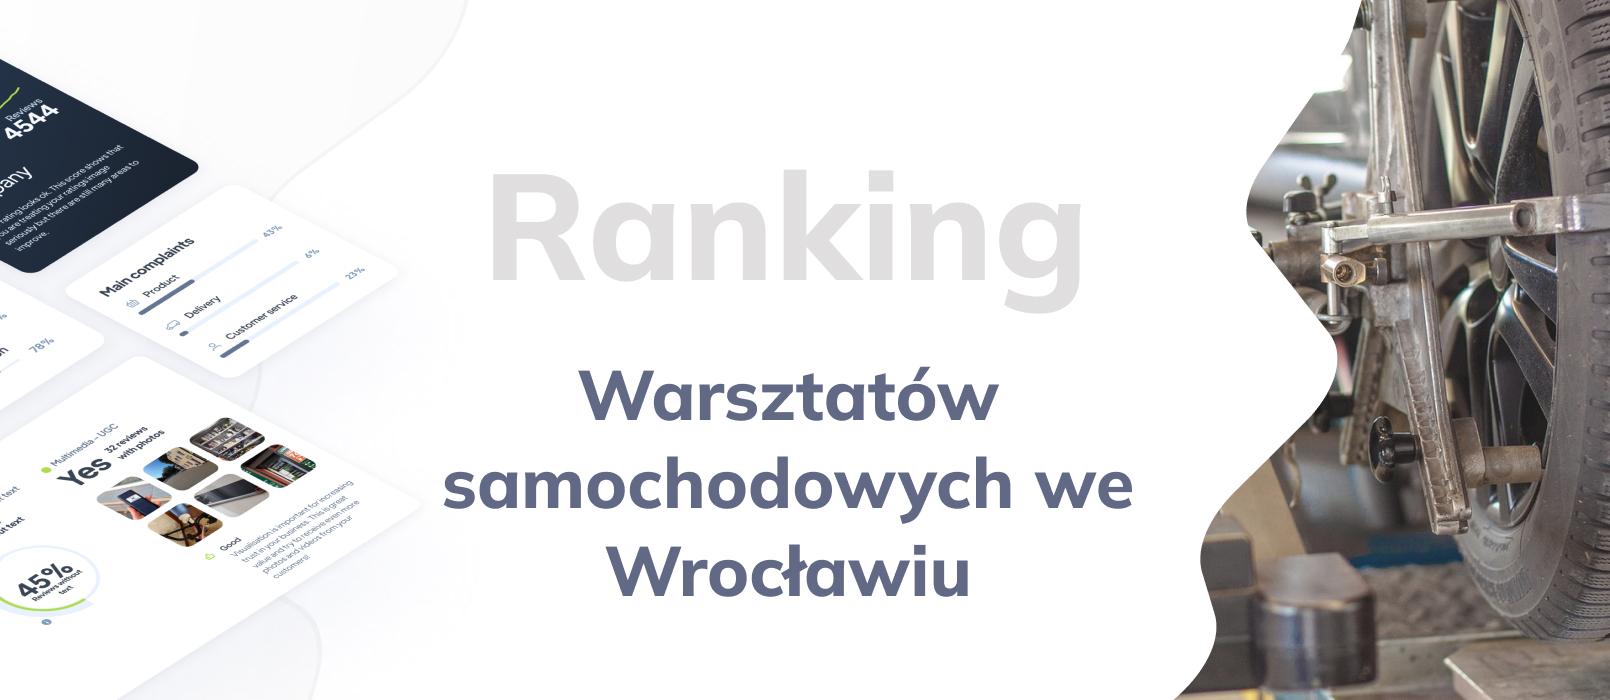 Warsztaty samochodowe we Wrocławiu - ranking TOP 10